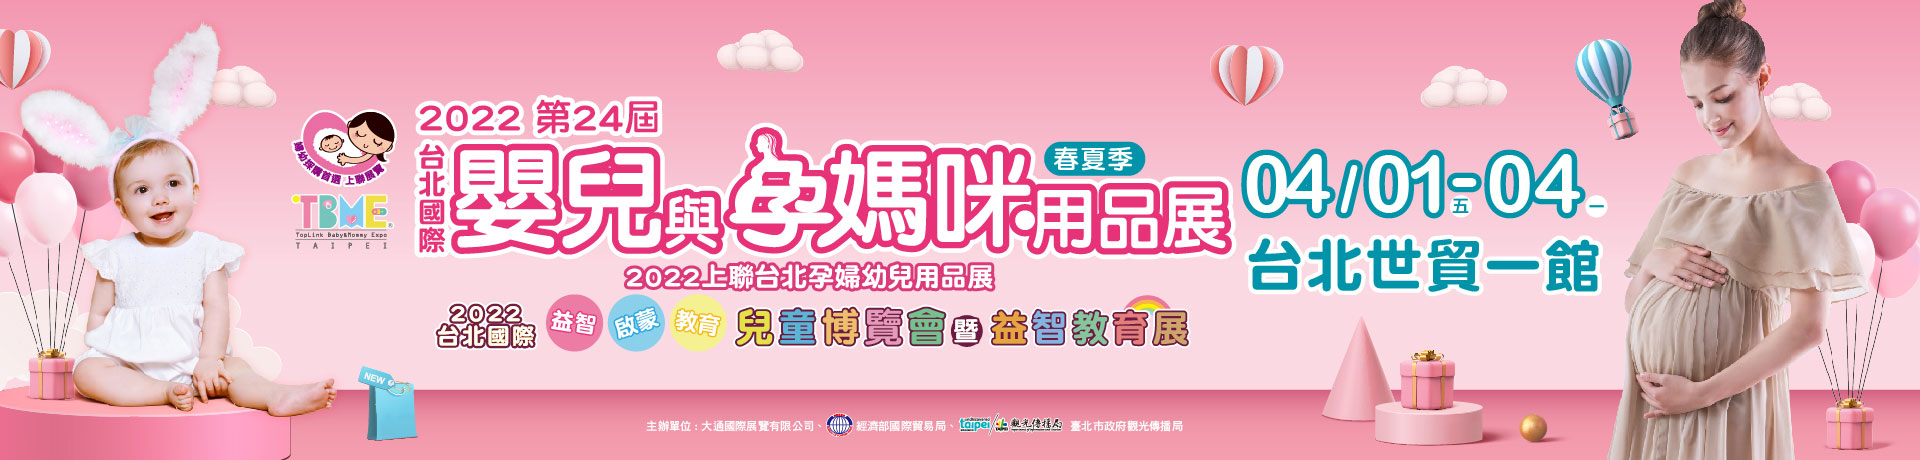 2022台北國際嬰兒與孕媽咪用品展暨兒童博覽會(春夏季)